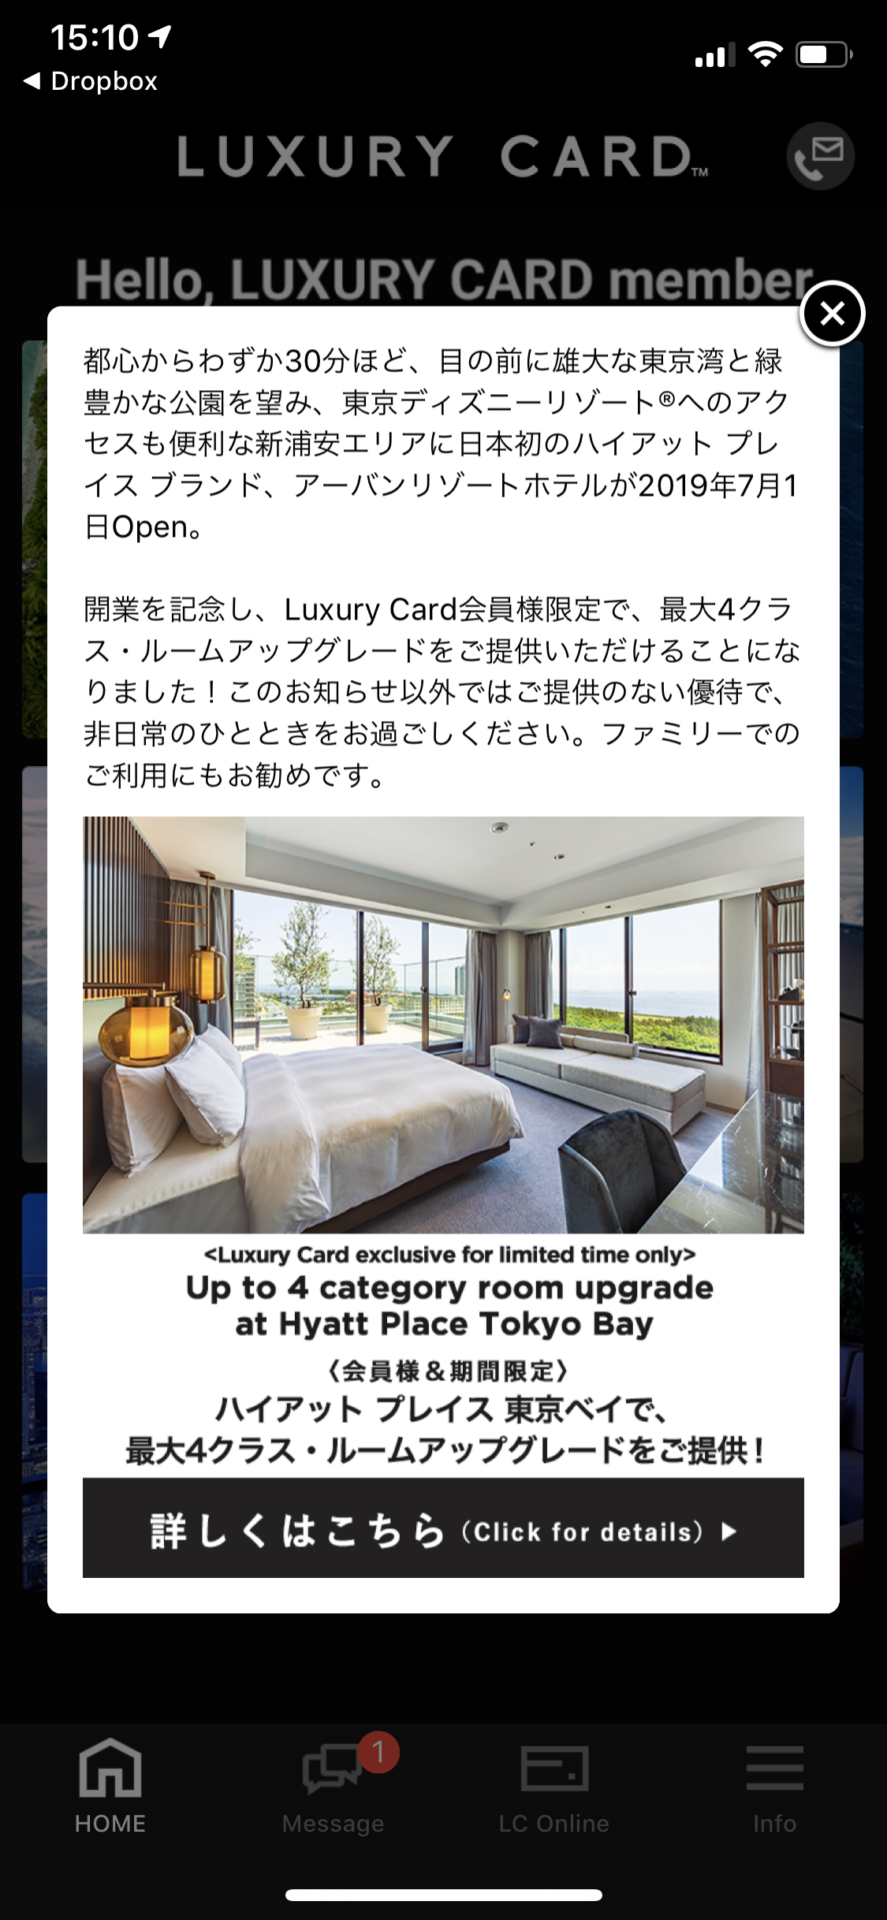 ハイアットプレイス東京ベイで最大4クラスの客室アップグレード